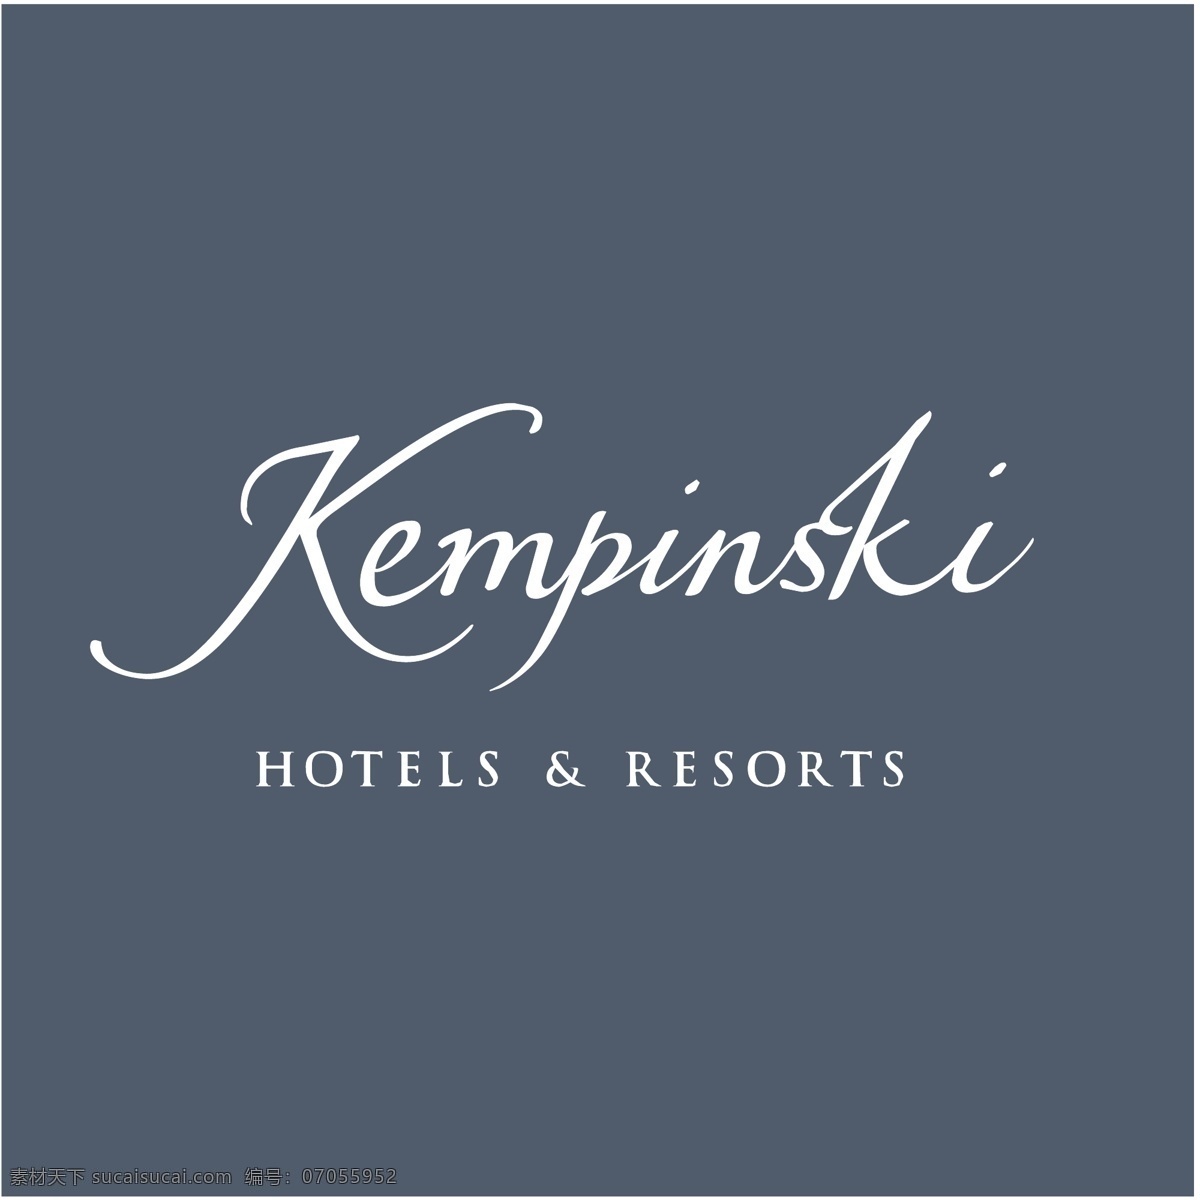 凯宾斯基 酒店 免费 psd源文件 logo设计